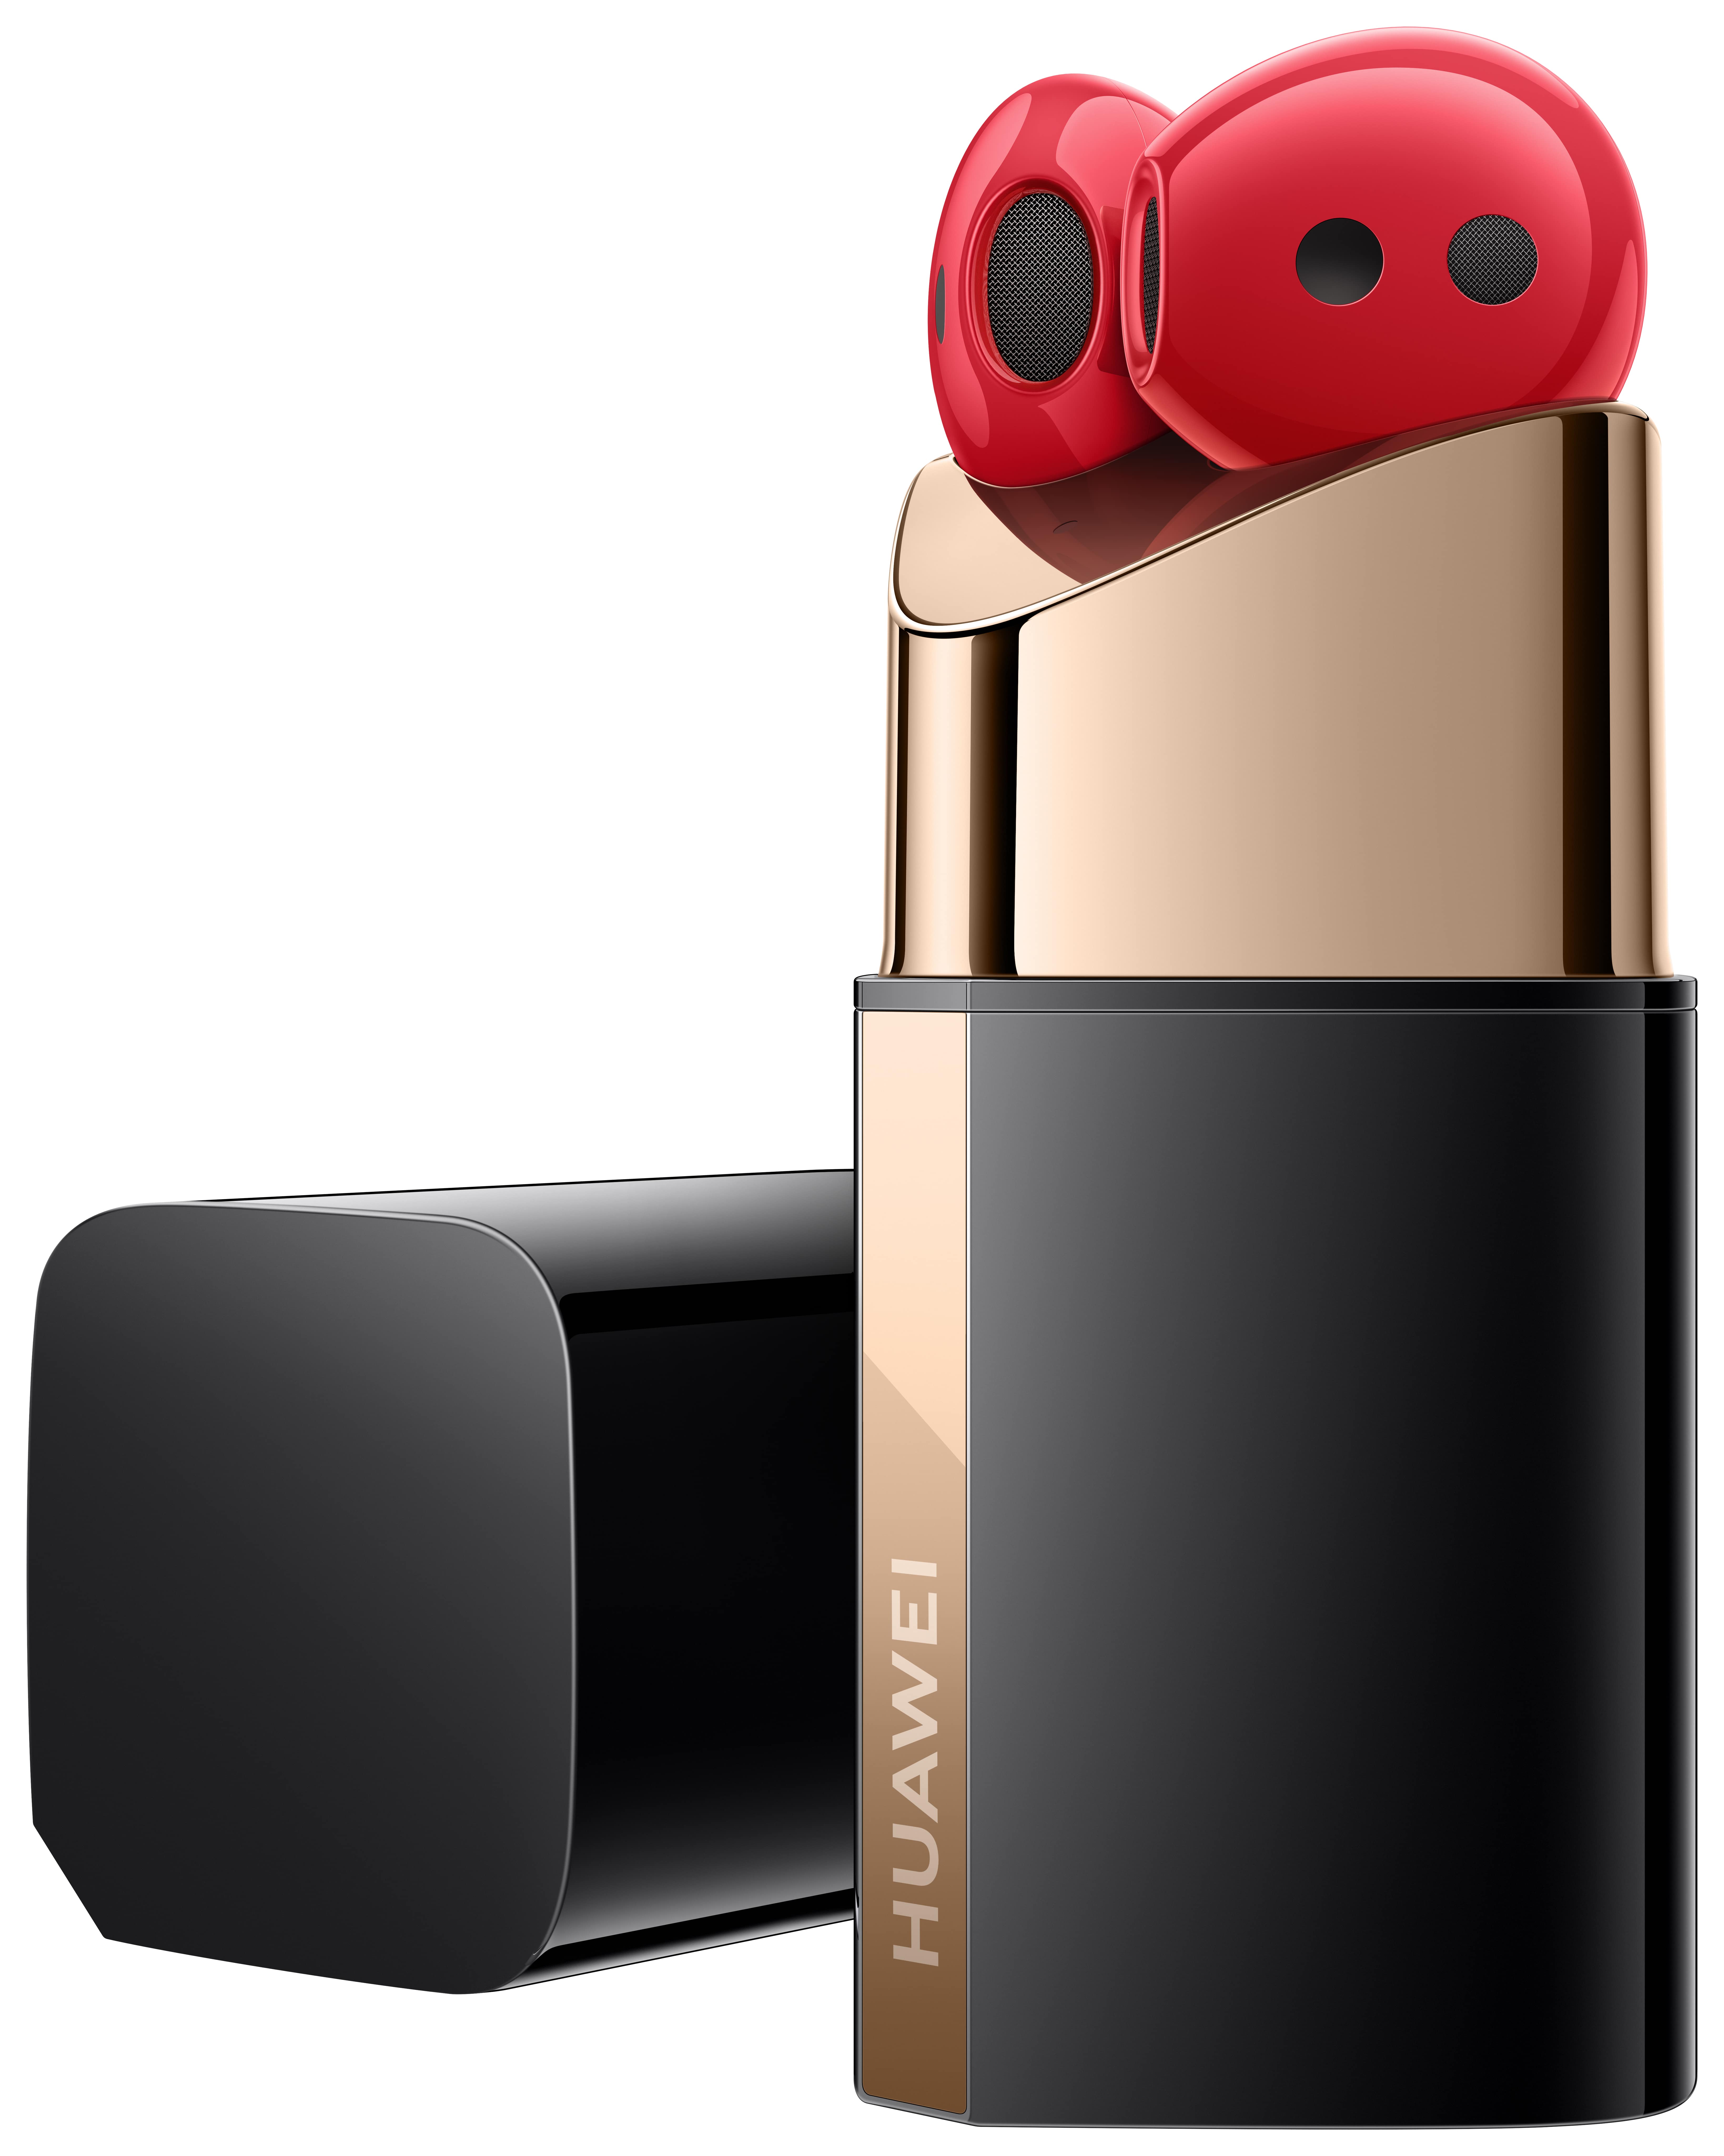 Die HUAWEI FreeBuds Lipstick Edition